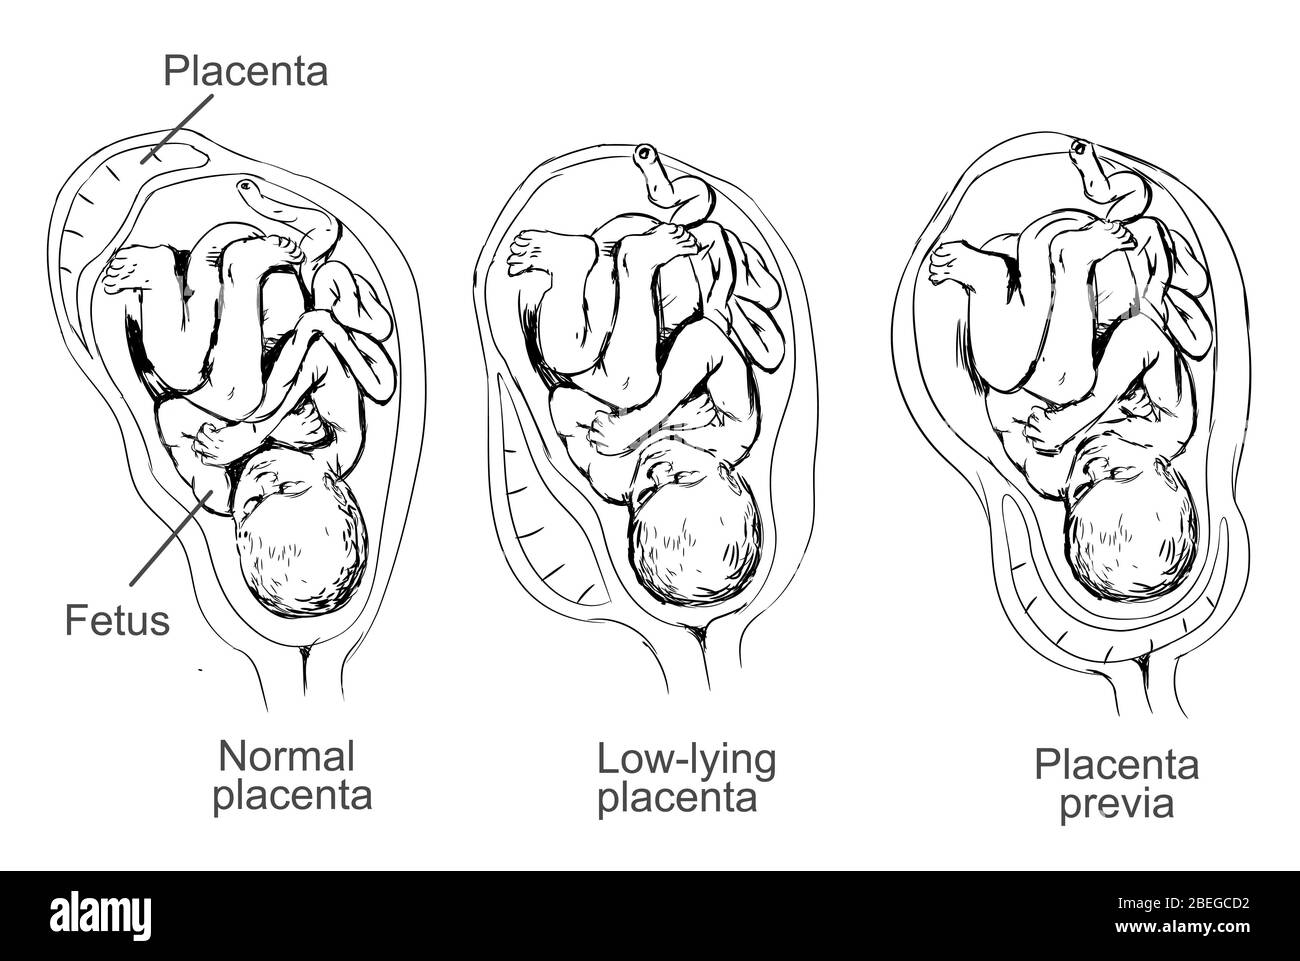 Abbildung der Plazenta previa, ein Zustand, in dem die Plazenta tief in der Gebärmutter liegt und den Gebärmutterhals bedeckt, was zu Schwangerschaftskomplikationen führt. Stockfoto